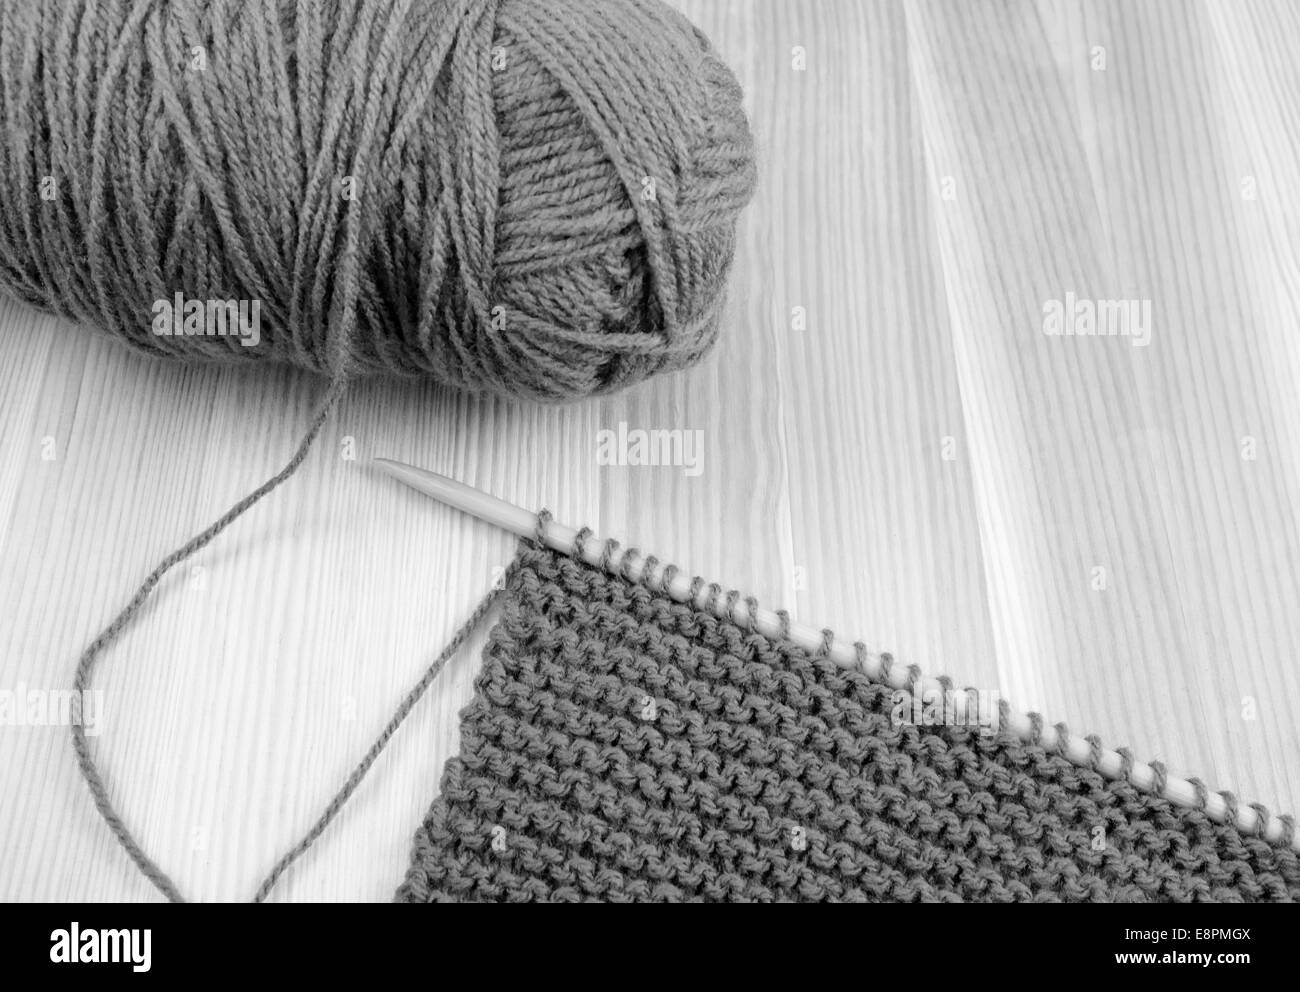 Cierre de bola de lana con longitud de garter stitch en una aguja de tejer, sobre madera - procesamiento monocromo Foto de stock